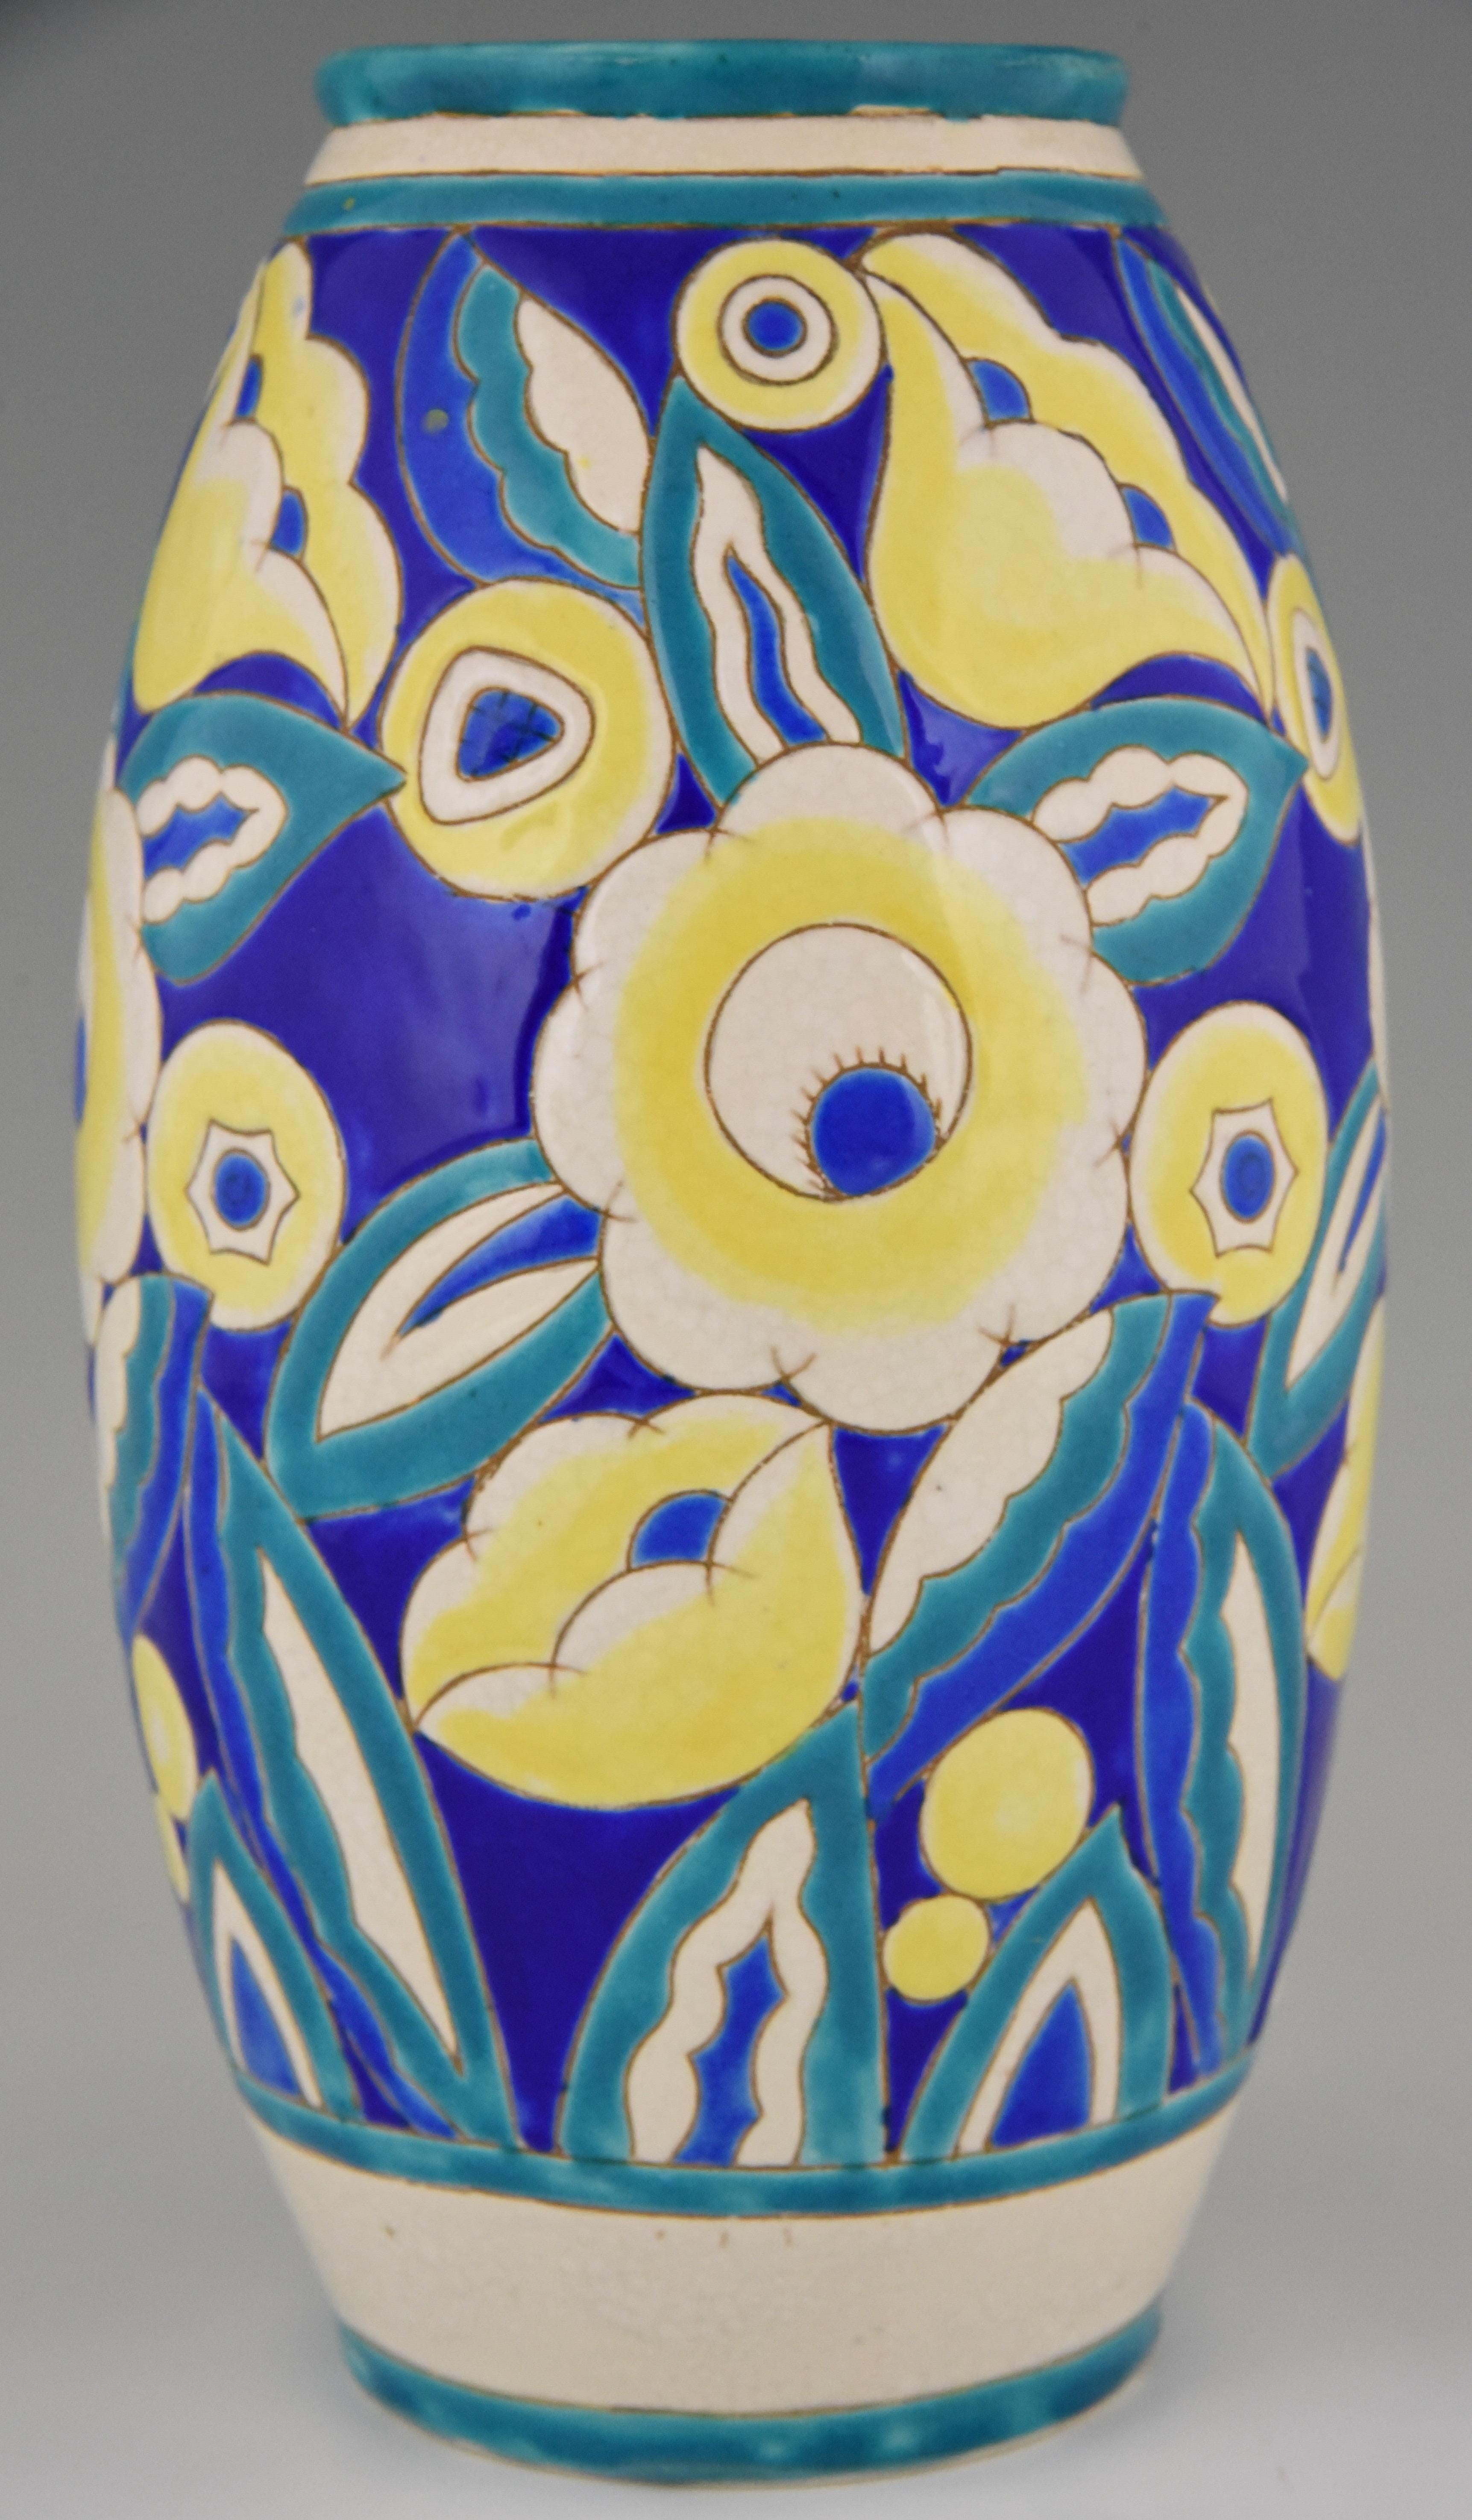 Belgian Art Deco Ceramic Vase with Flowers Keramis, Belgium, 1932